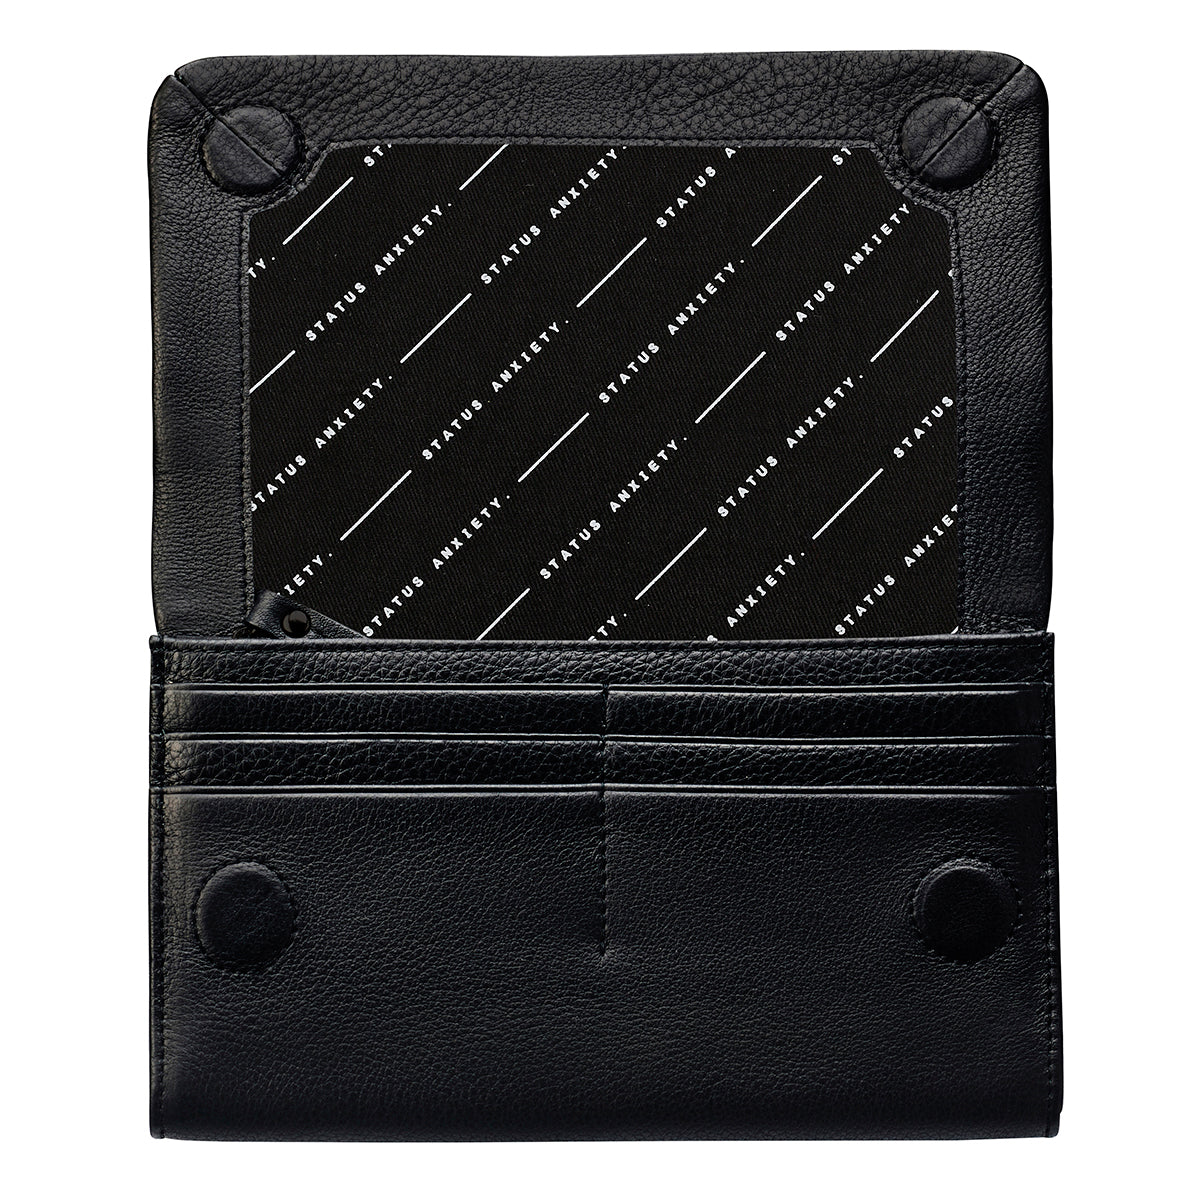 Remnant leather wallet black